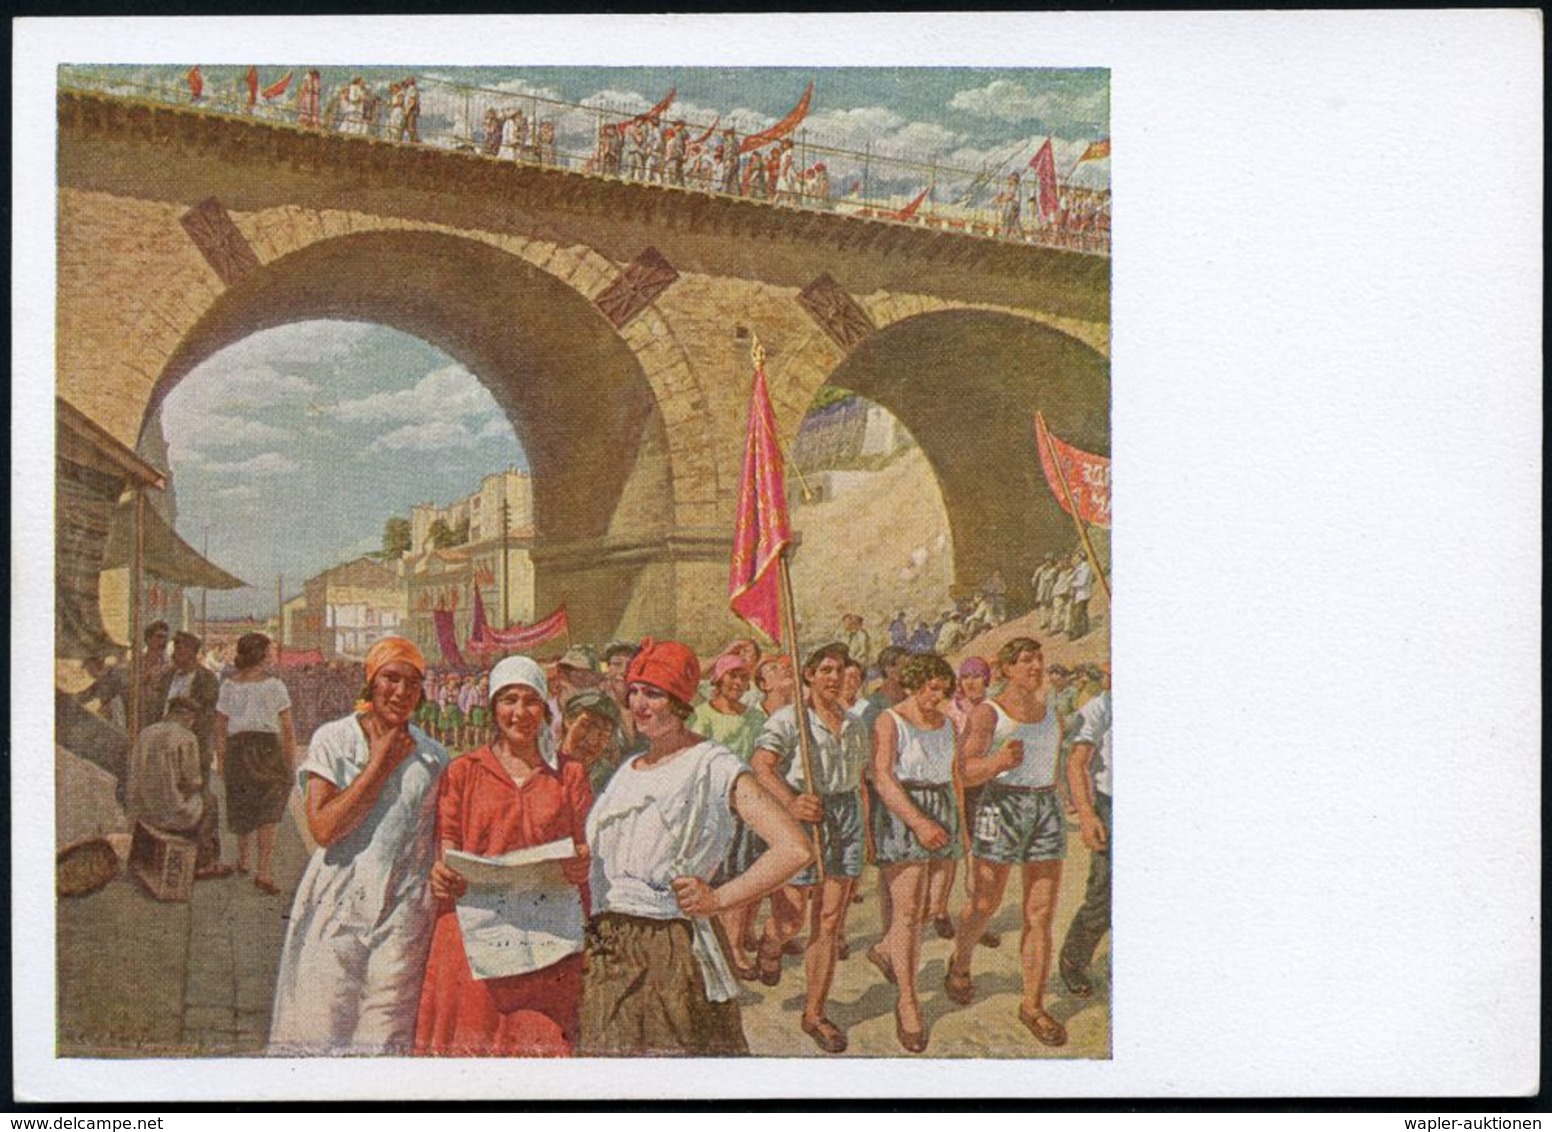 BRÜCKEN : UdSSR 1929 5 Kop BiP Soldat, Rotbraun "Revolutions-Museum": 1. Mai In Odessa = Bahn-Viadukt = Gemälde V. S.Lup - Bridges